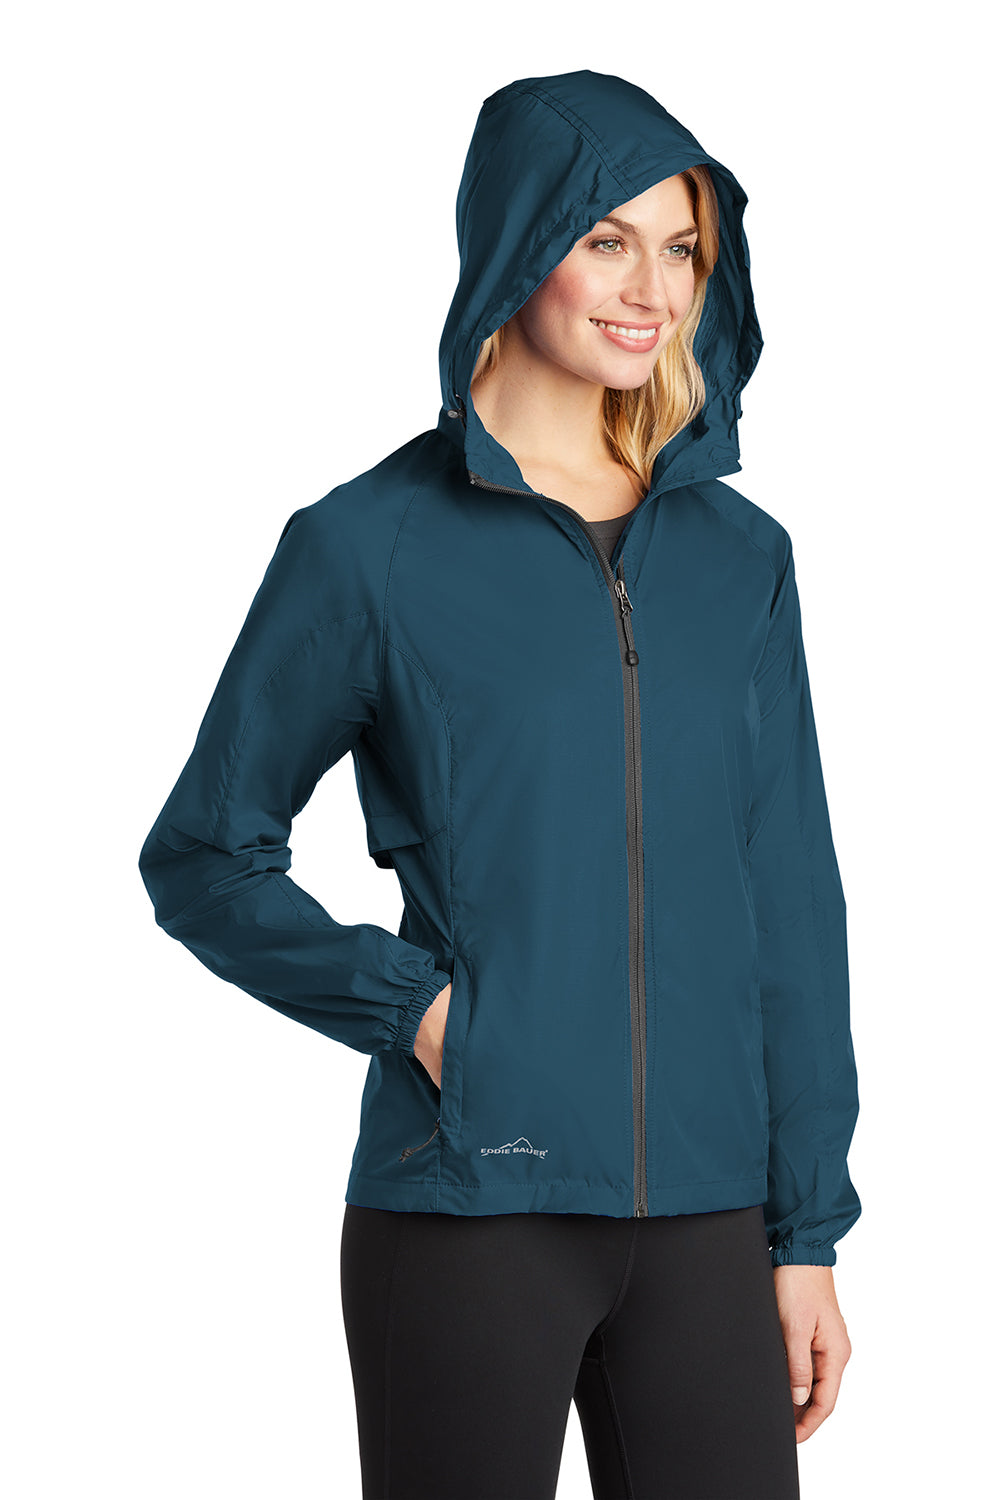 Eddie Bauer EB501 Womens Packable Wind Resistant Full Zip Hooded Jacket Adriatic Blue Model 3Q